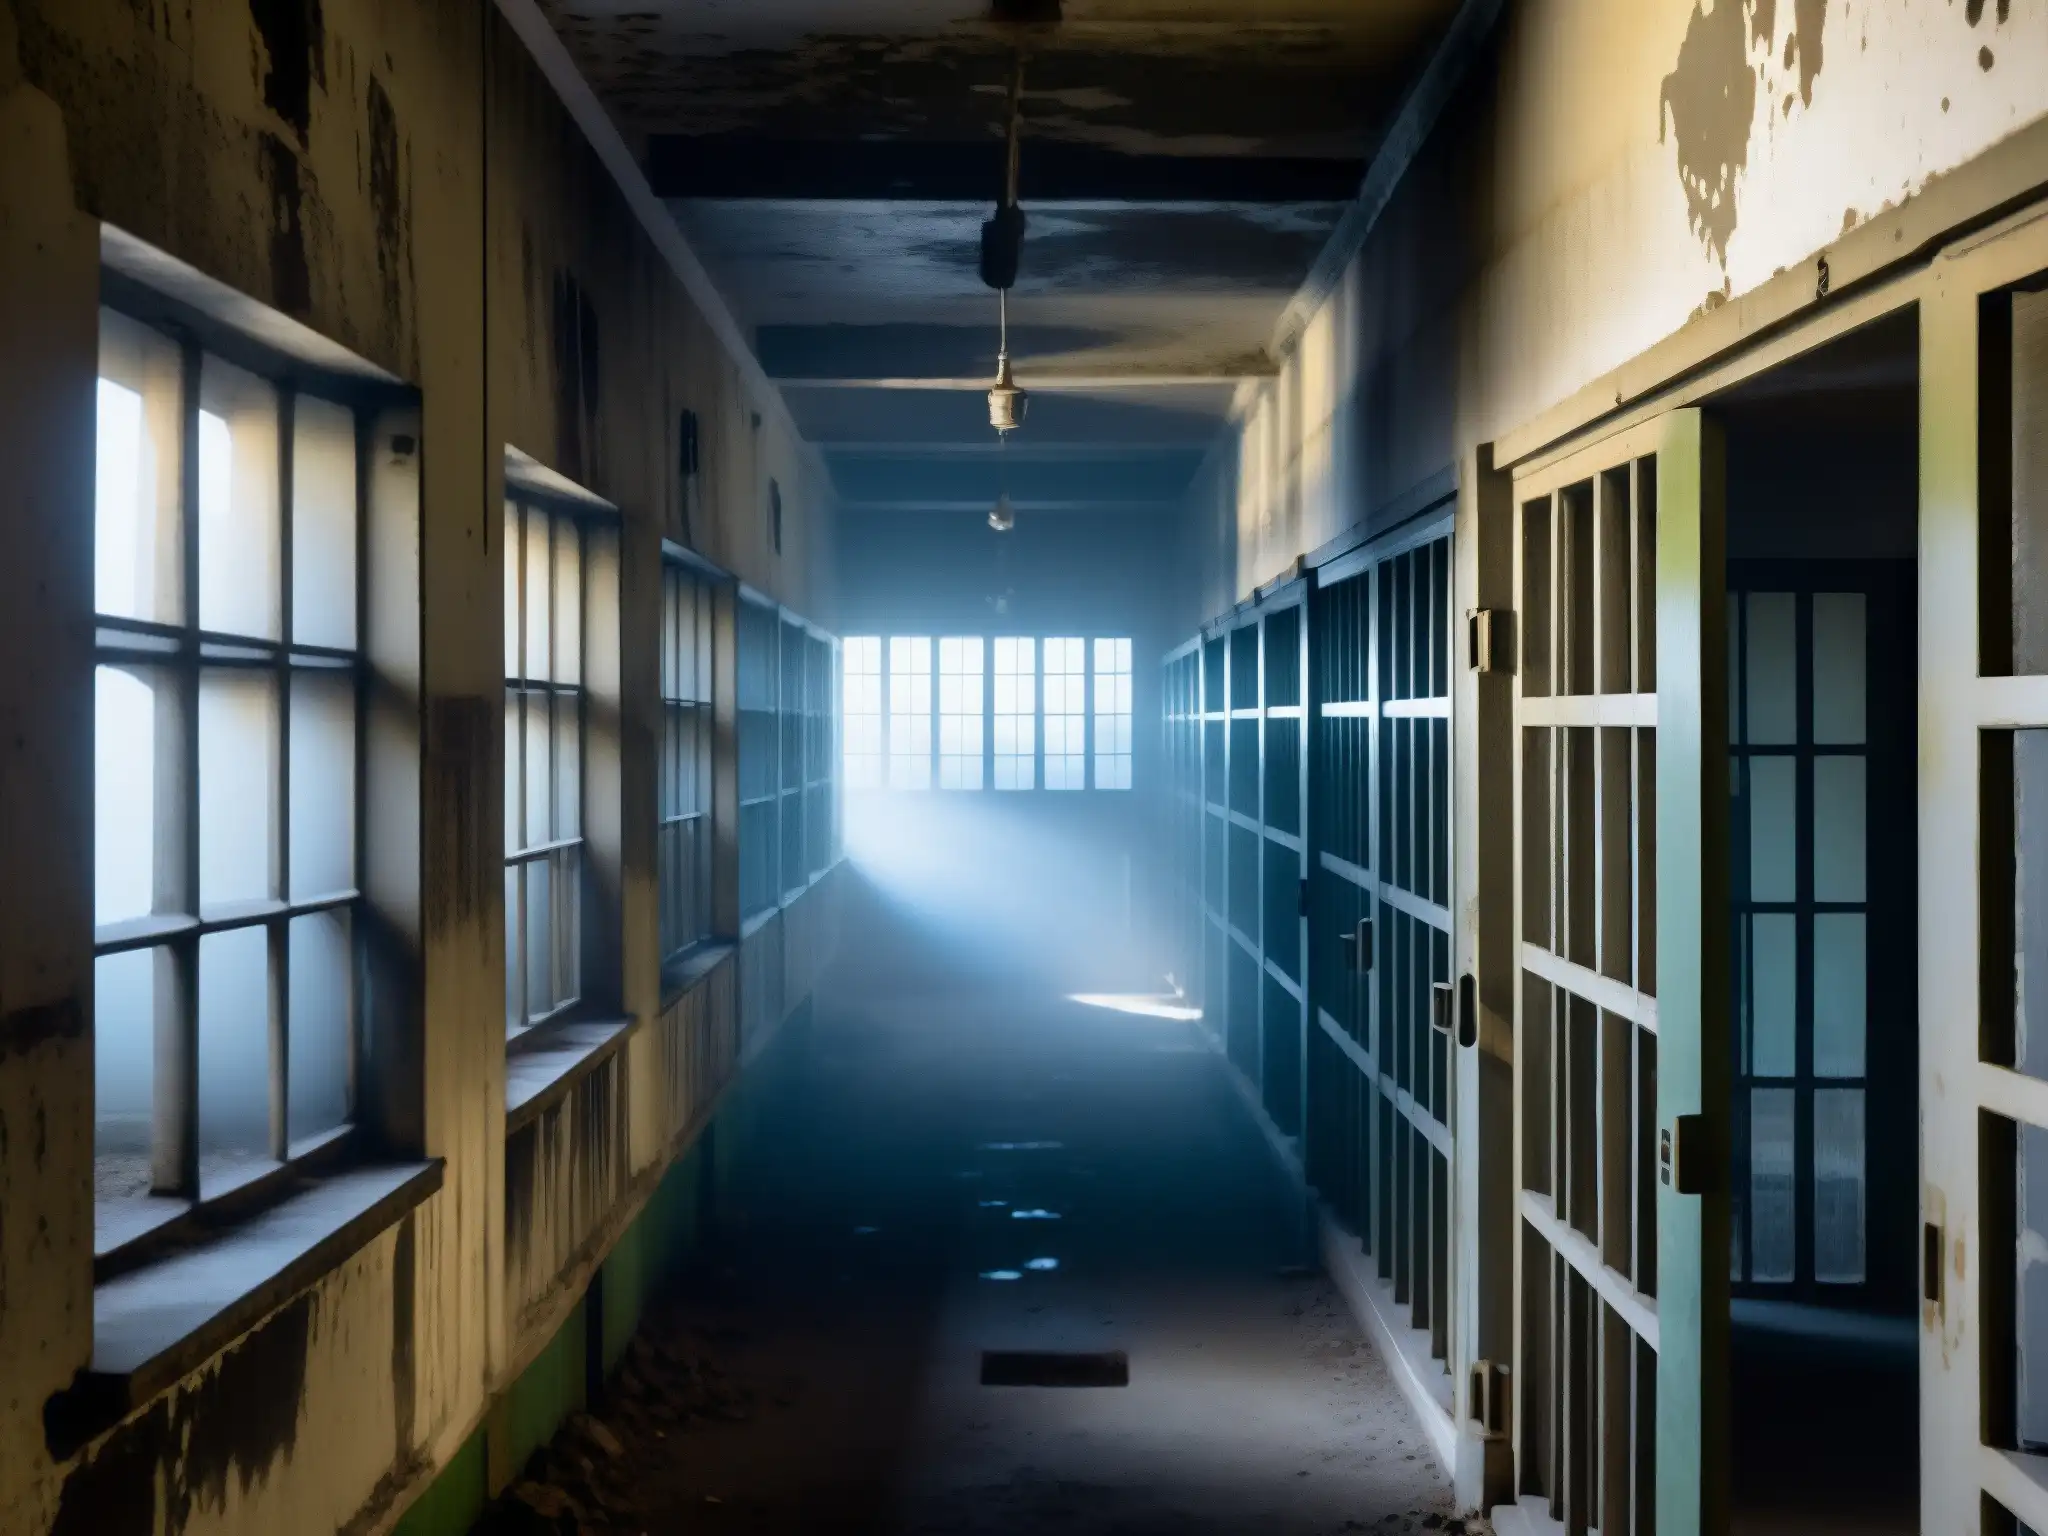 Corredores abandonados de Alcatraz, celdas vacías y sombras fantasmales, evocando leyendas urbanas Alcatraz fantasmas